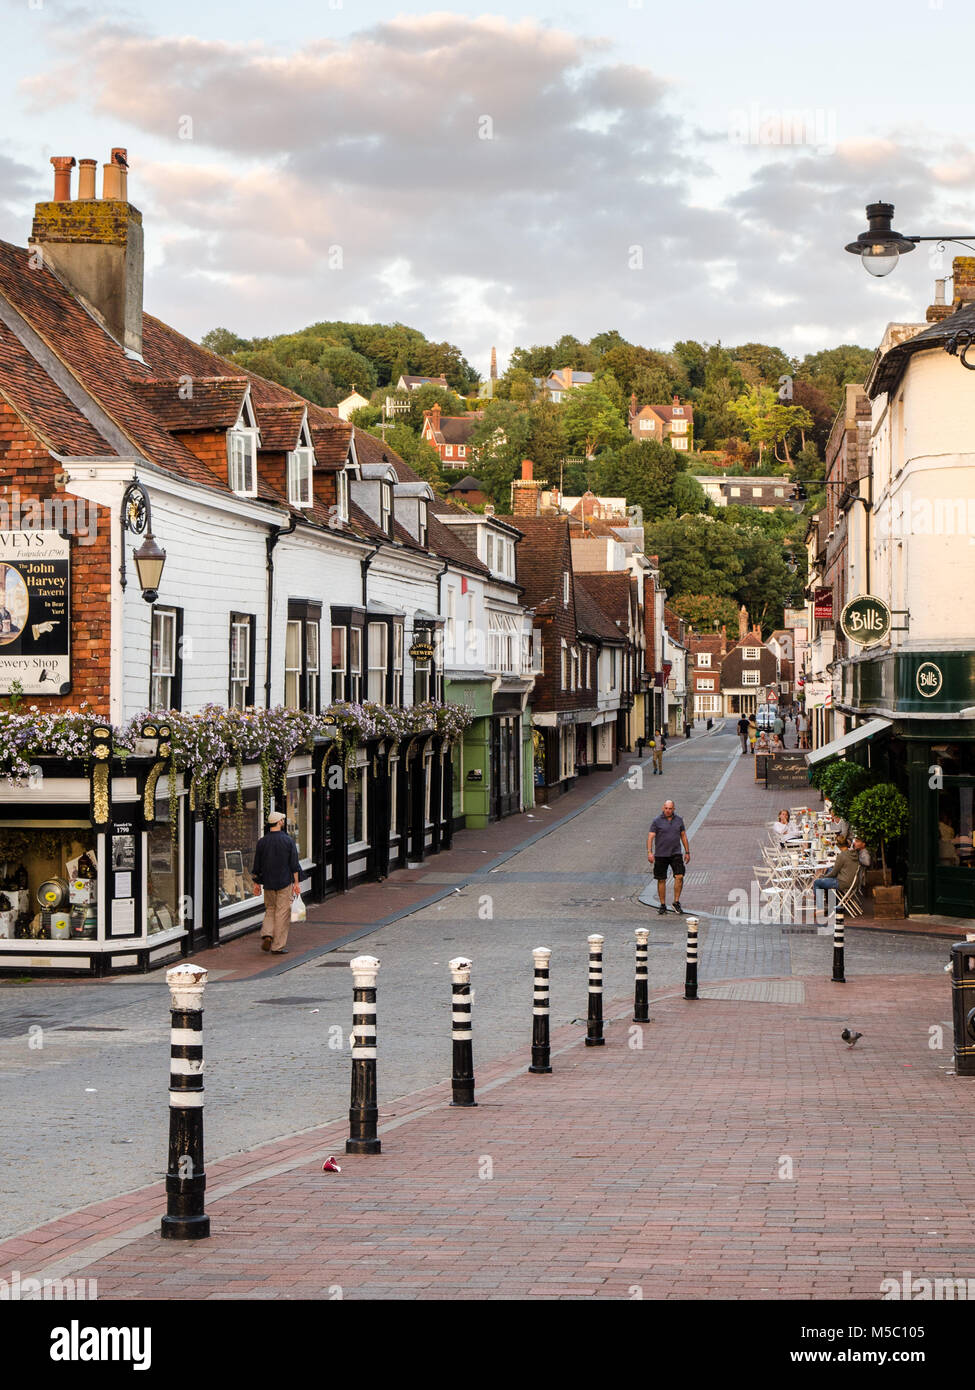 Lewes, England, UK - 21 août 2013 : les piétons à pied des boutiques et restaurants sur passé grand-rue Cliffe dans l'East Sussex ville de Lewes. Banque D'Images